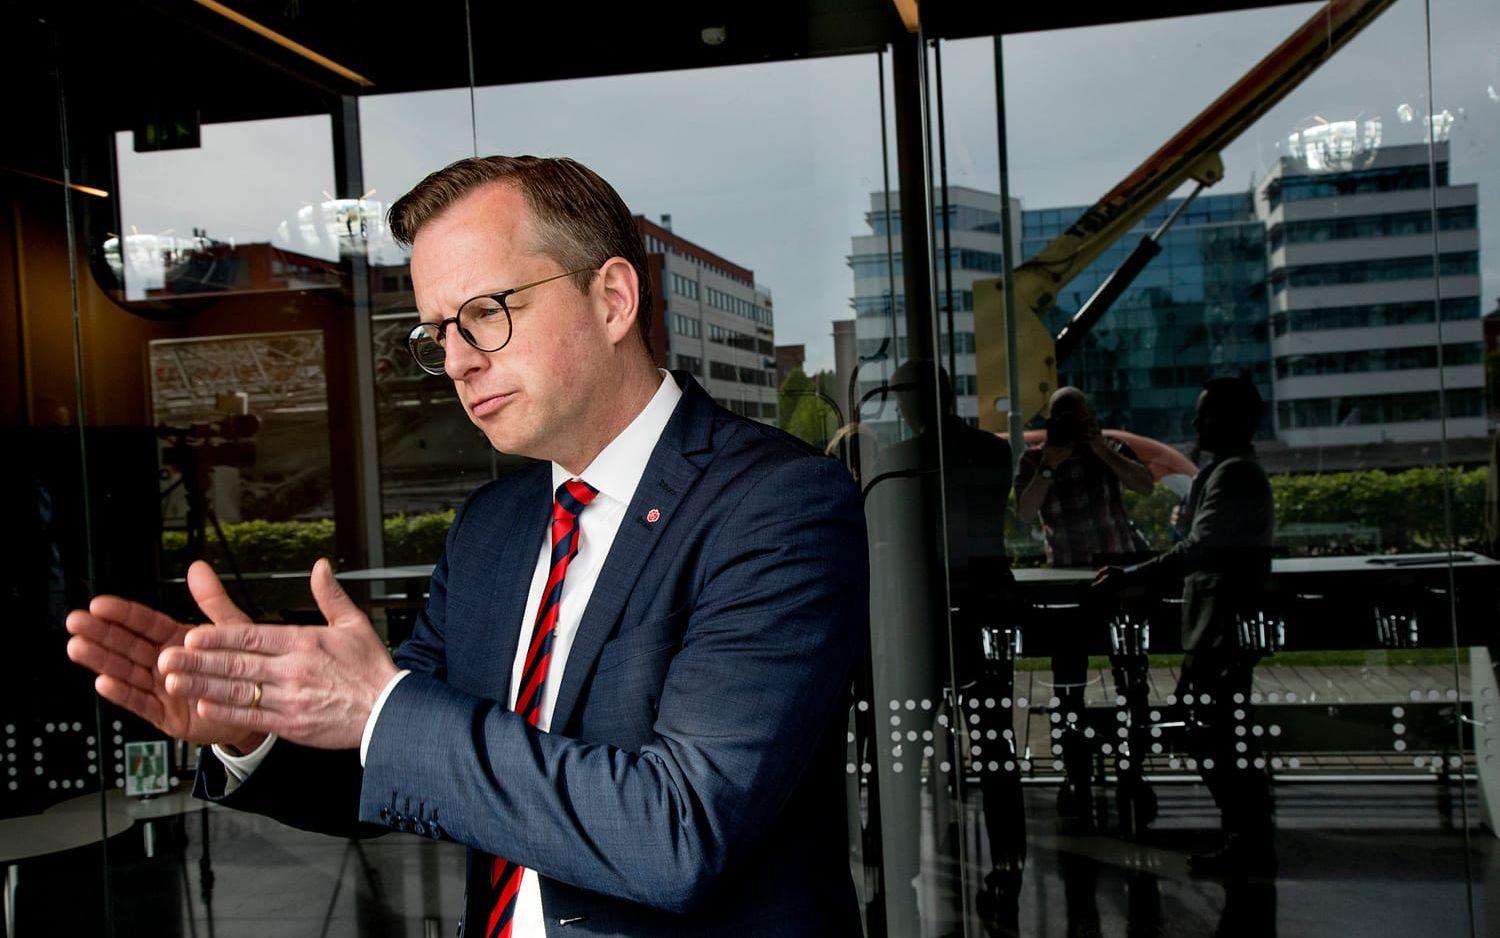 Näringsminister Mikael Damberg (S) har pratat om möjligheterna för ytterligare elbilssatsningar i Göteborg. Bland annat ett testlabb. Foto: Adam Ihse/TT